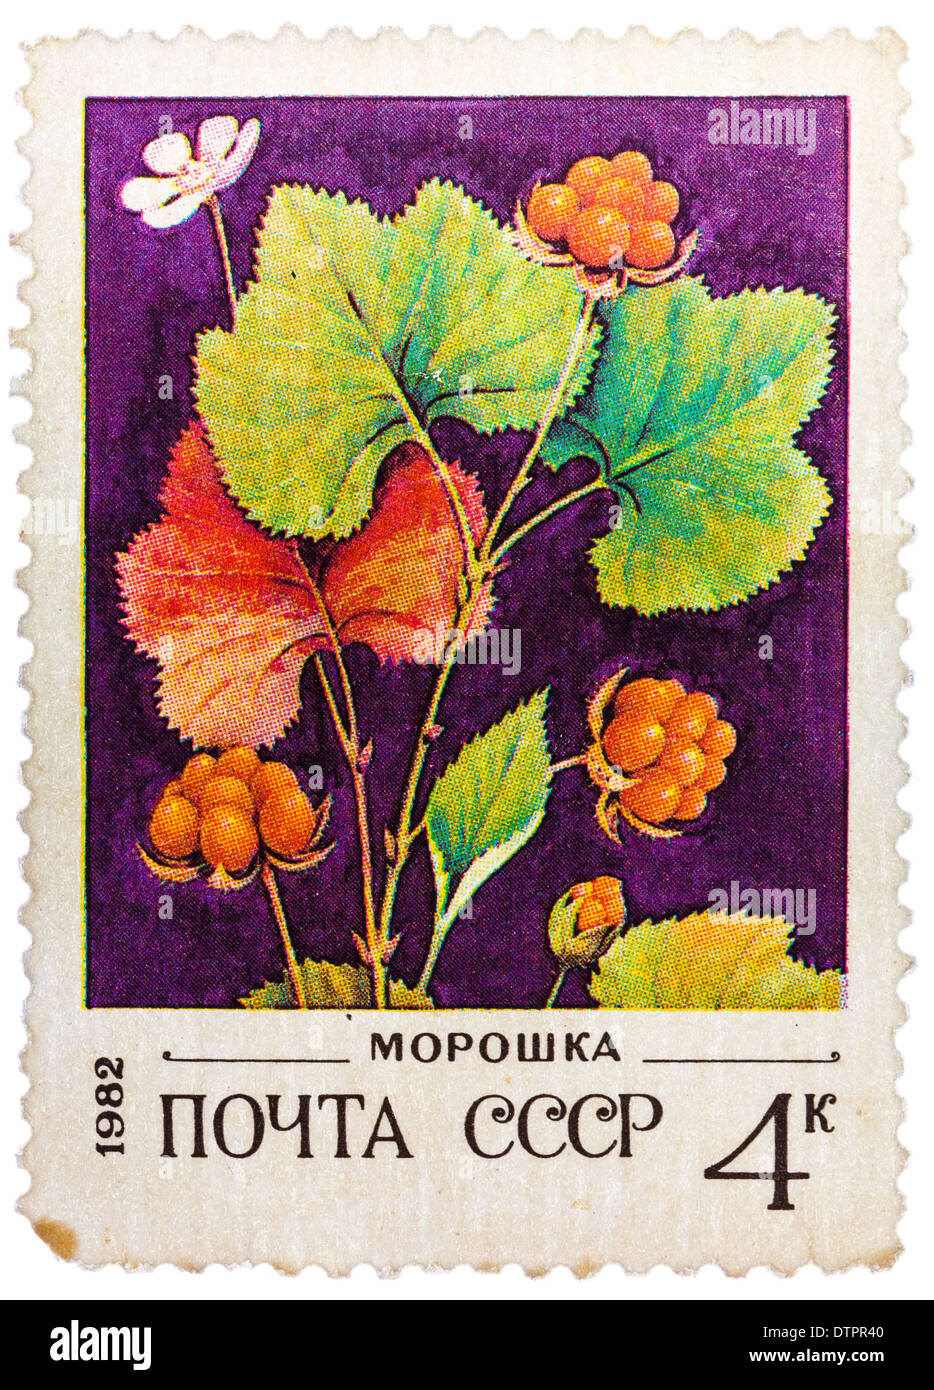 Ost de timbres en URSS (CCCP, Union soviétique) montre l'image de l'airelle Banque D'Images